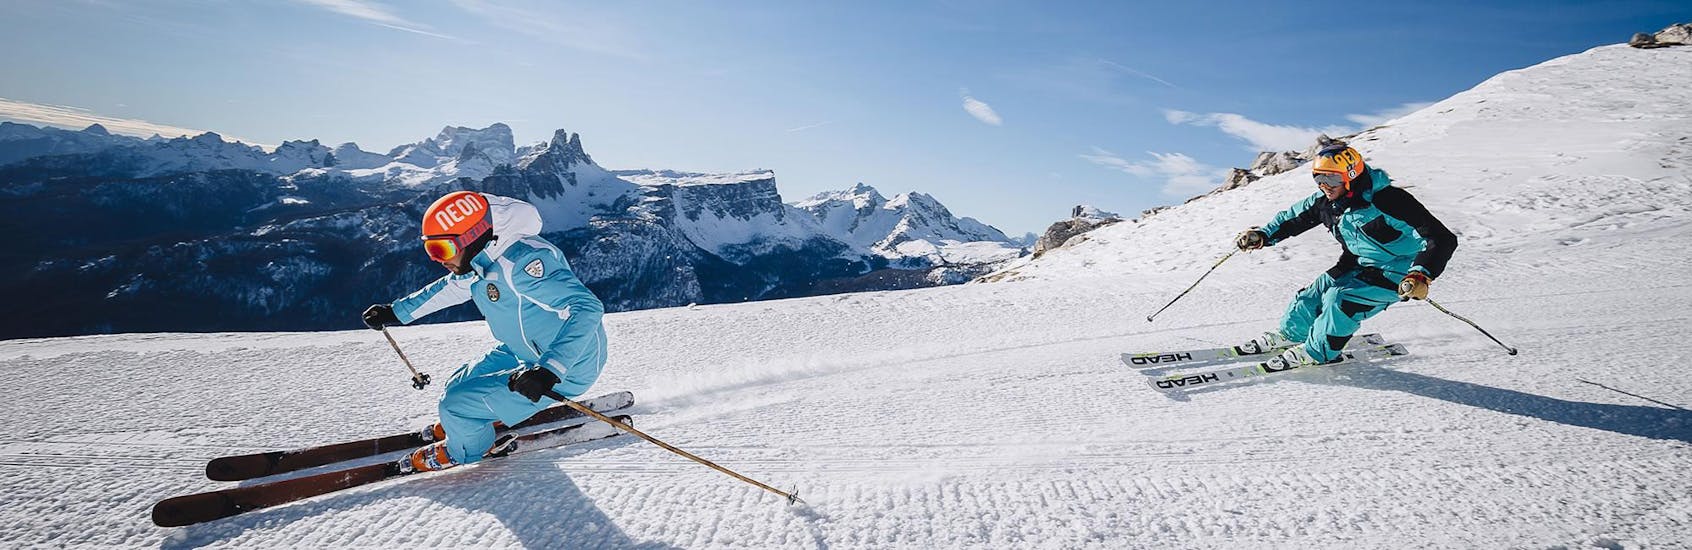 Un moniteur de ski montre le chemin sur une piste de ski dans la station de ski de Cortina d'Ampezzo pendant un des cours particuliers de ski pour adultes - VIP organisés par l'école de ski Scuola di Sci e Snowboard Cristallo Cortina.